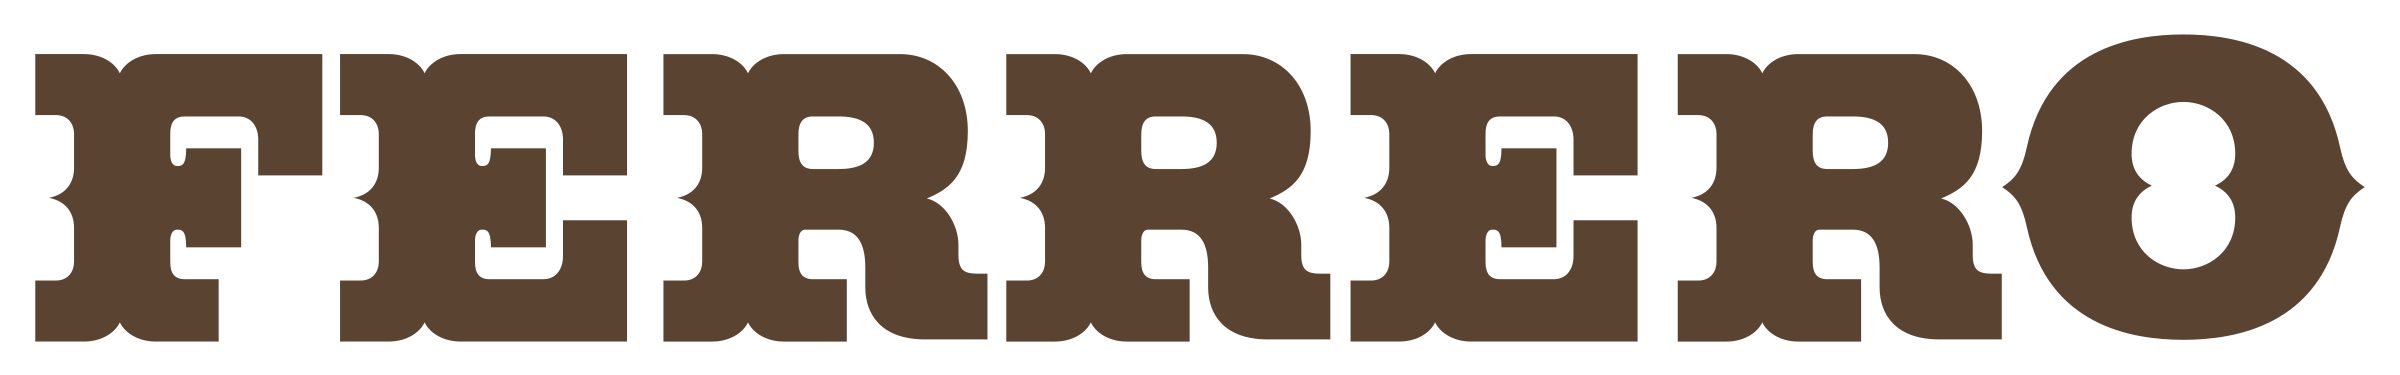 Client Logo Ferrero